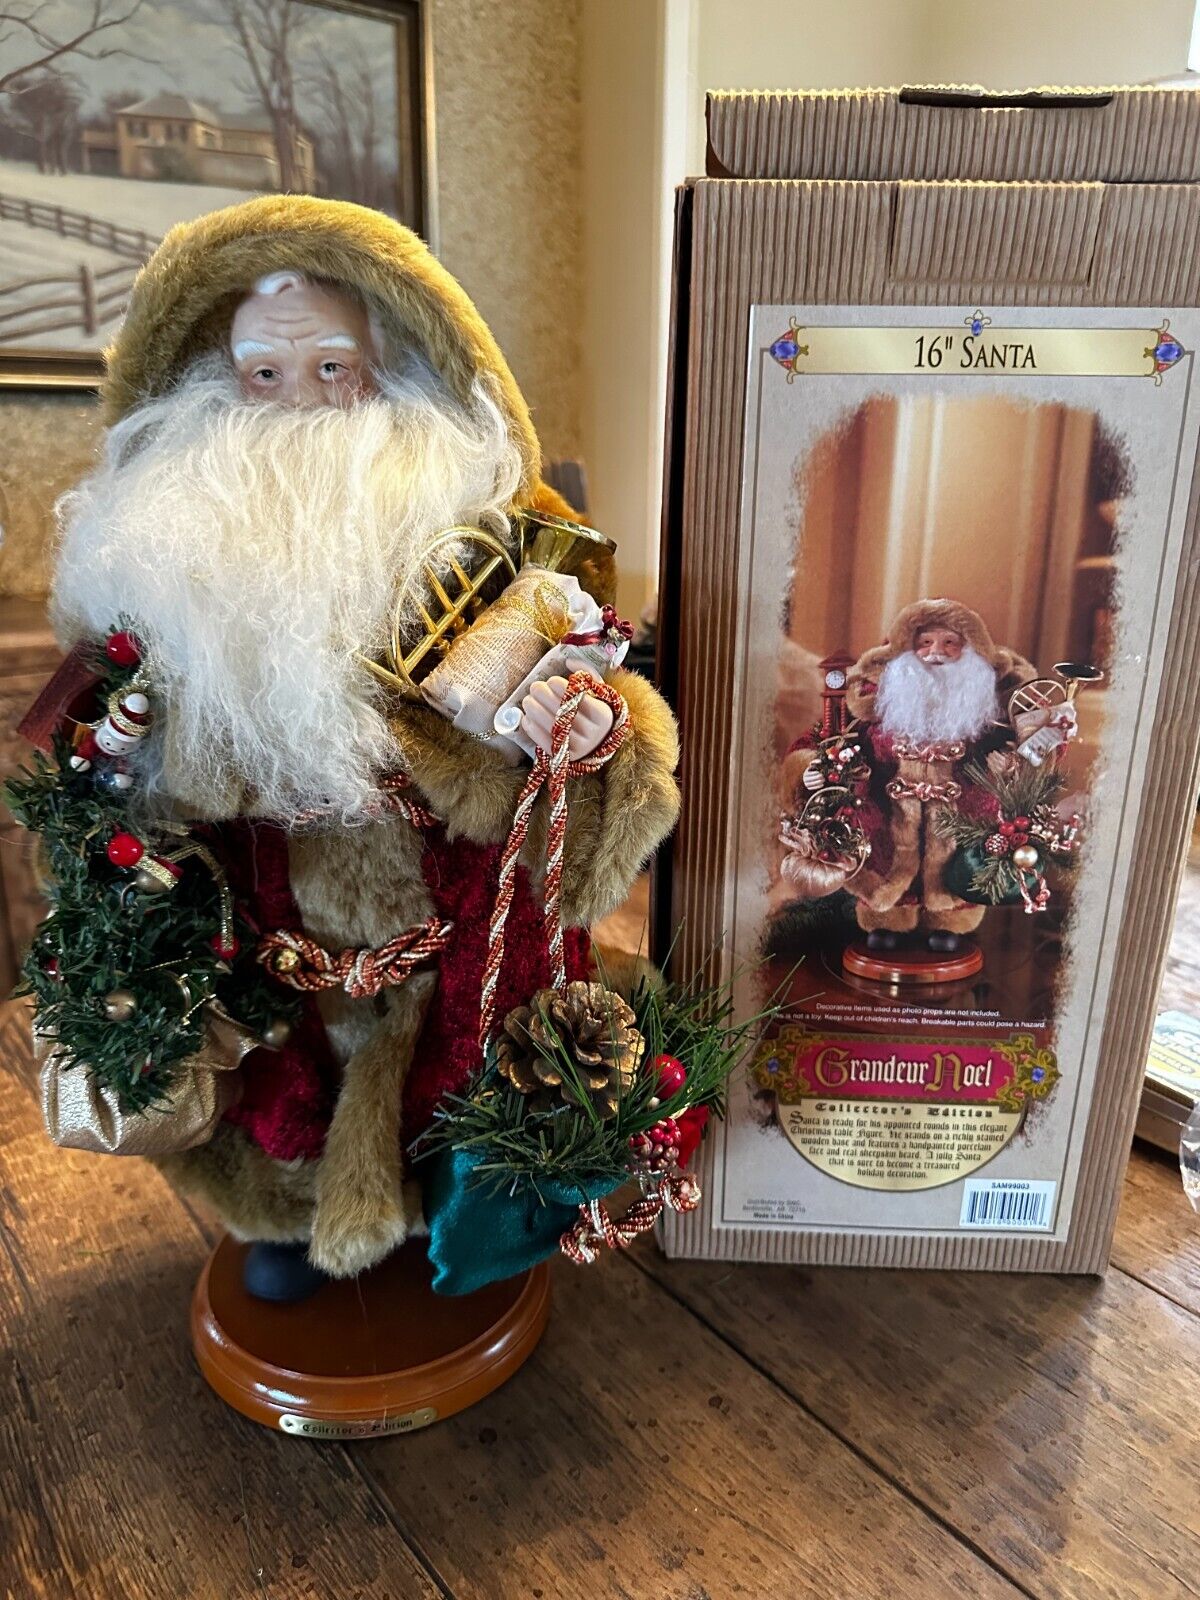 Grandeur Noel Collector’s Edition - 16 Inch Santa with Original Box